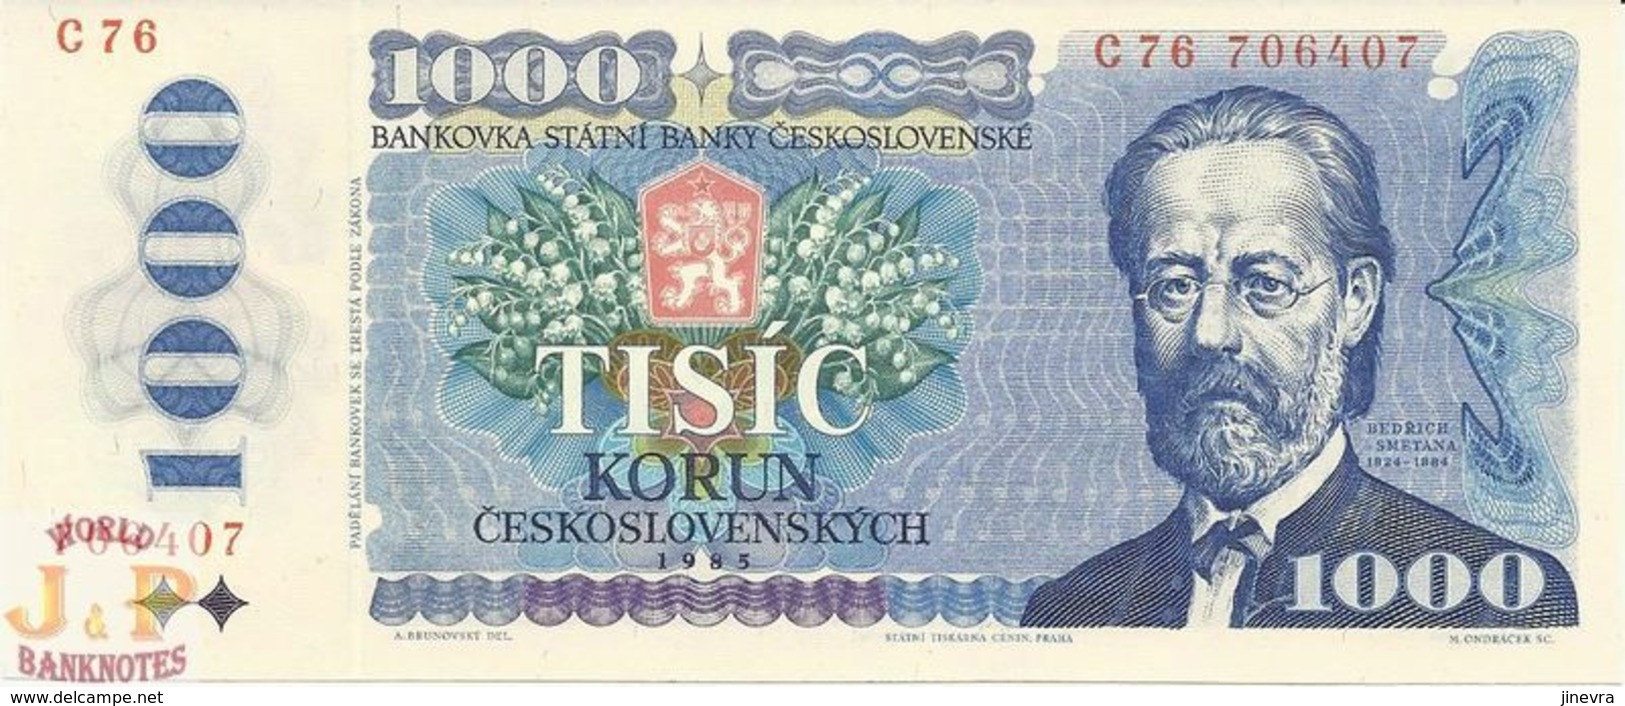 CZECHOSLOVAKIA 1000 KORUN 1985 PICK 98a UNC - Tschechoslowakei